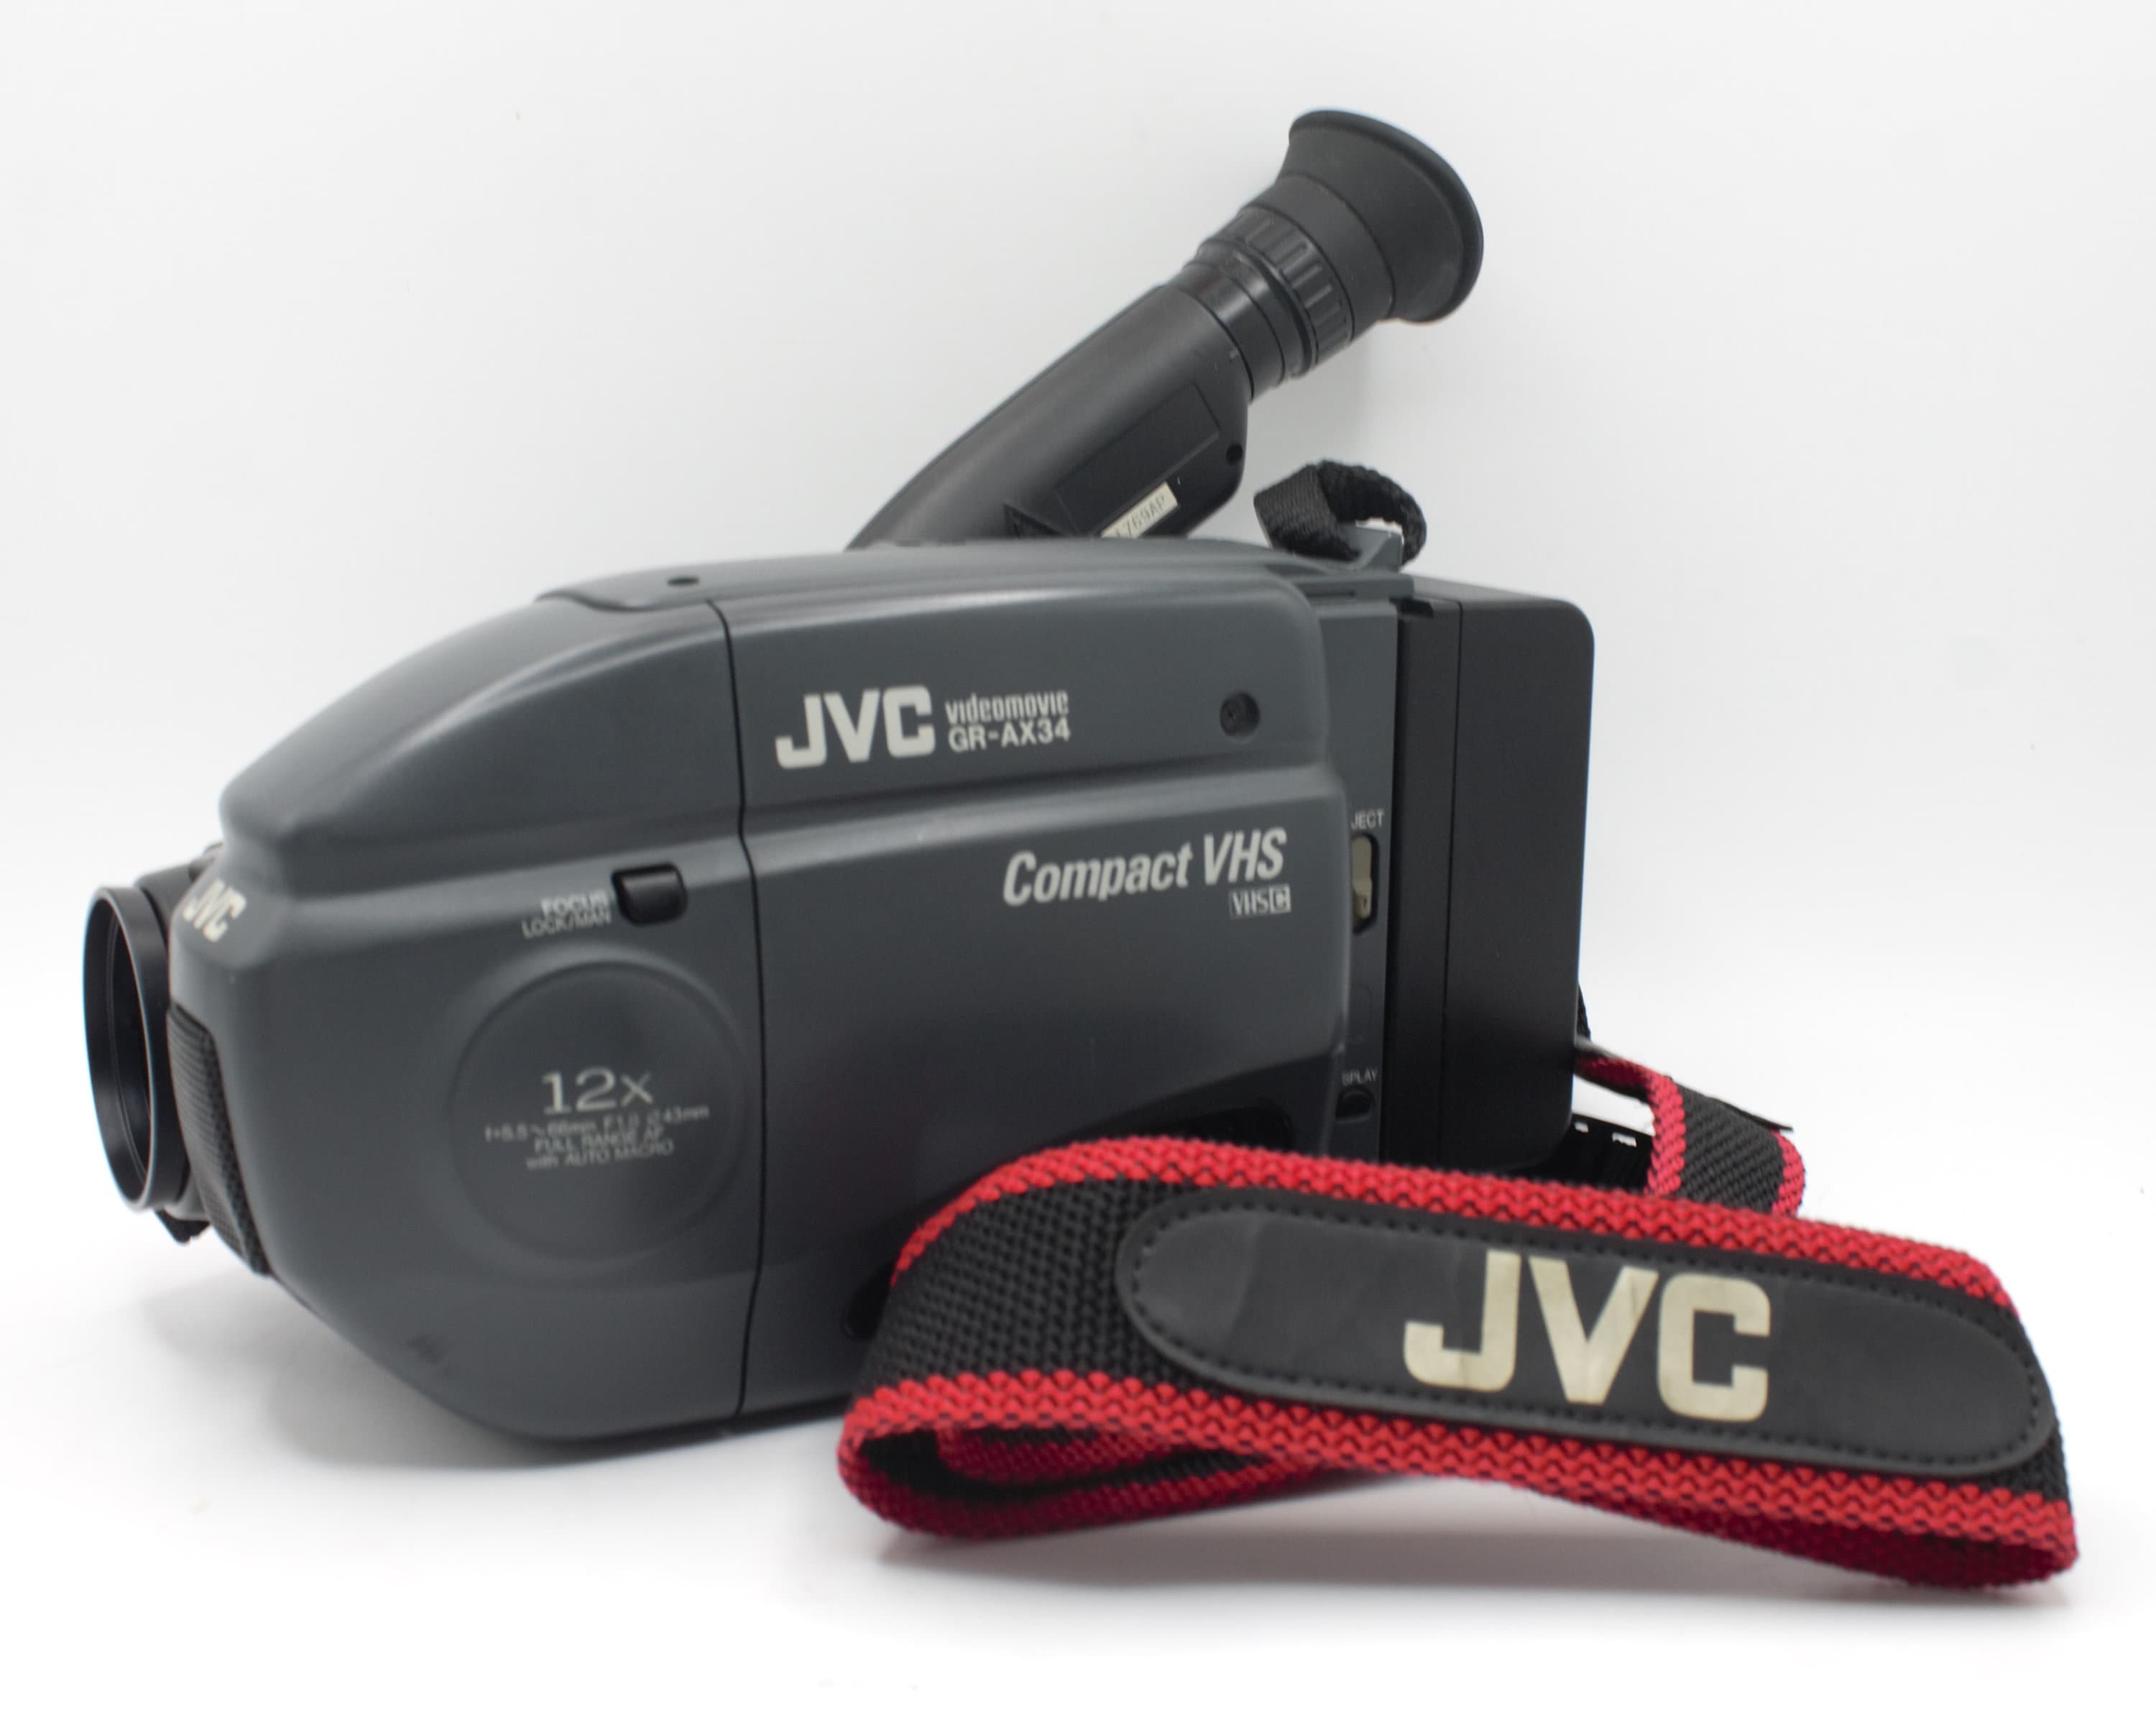 VHS Camcorder Compact Retro Vintage Video Camera 